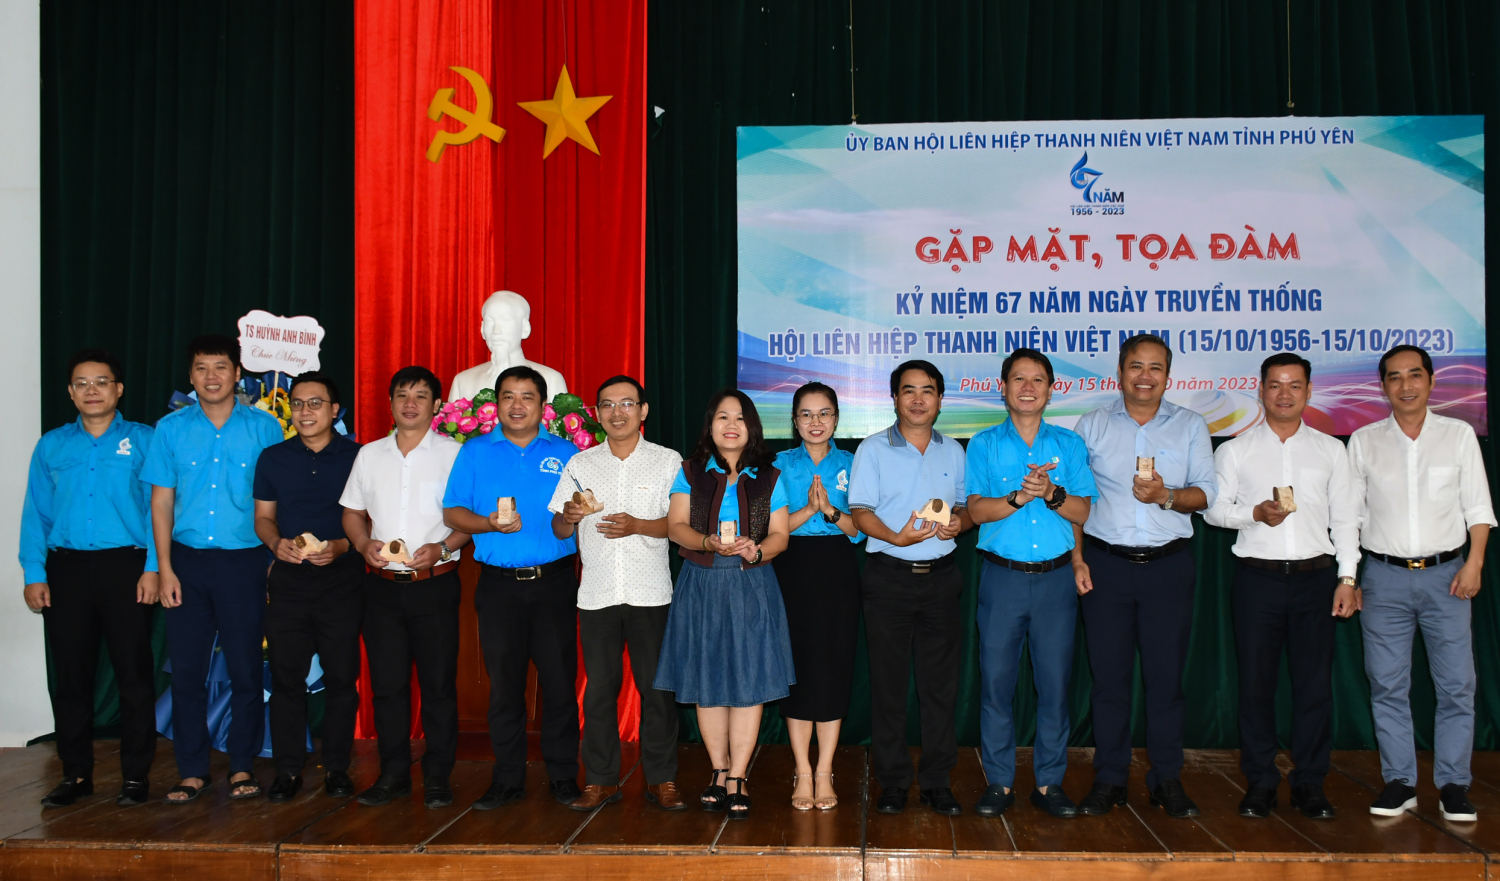 Anh Lương Minh Tùng, Bí thư Tỉnh Đoàn, Chủ tịch Hội LHTN Việt Nam tỉnh trao quà lưu niệm cho các anh, chị Ủy viên Ủy ban Hội qua các thời kỳ.